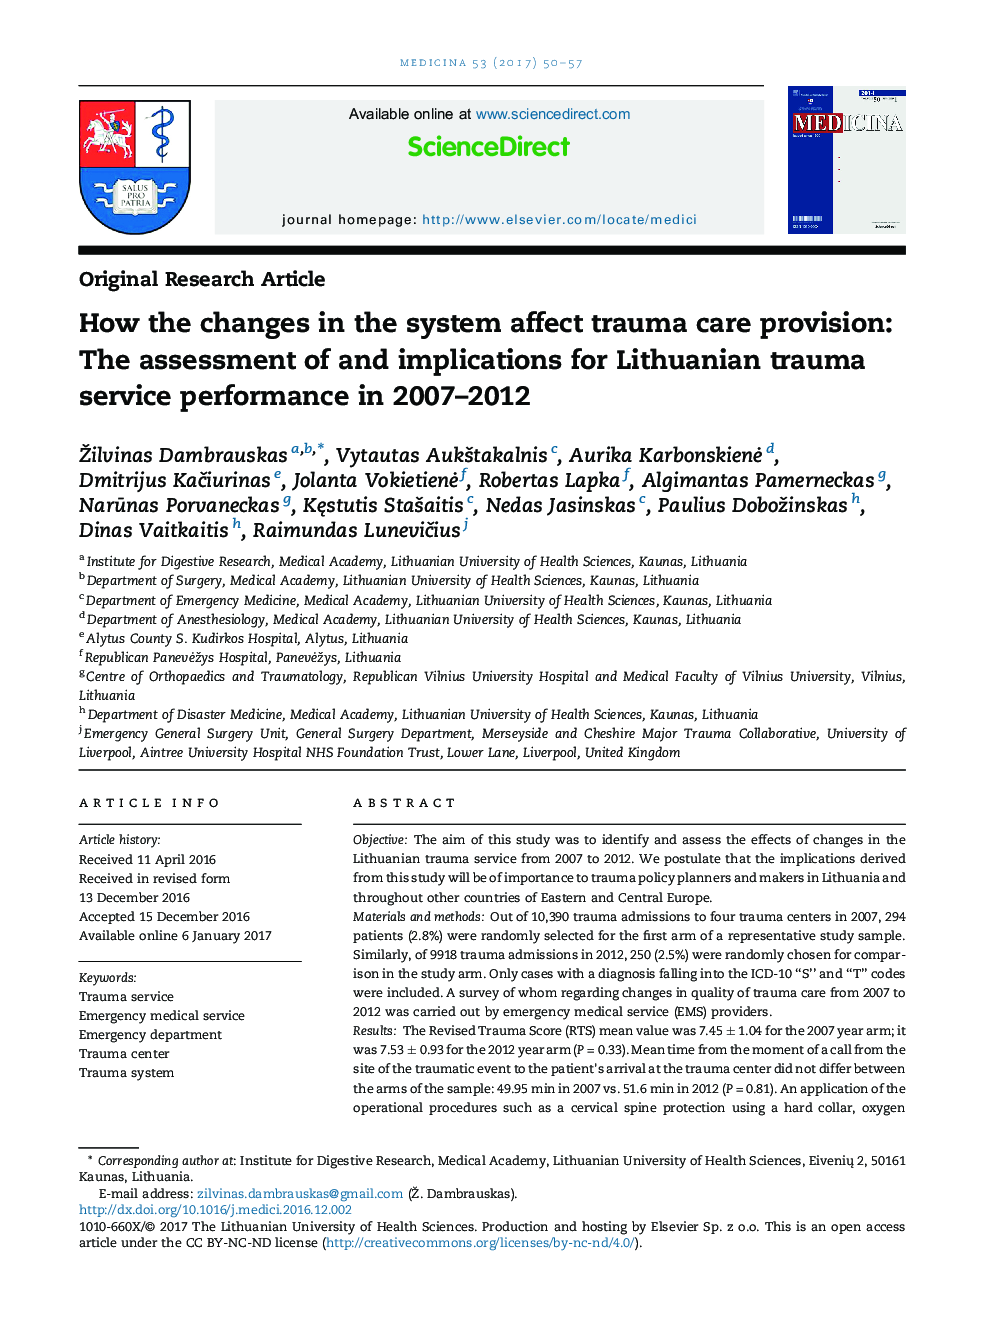 چگونه تغییرات در سیستم تأثیر گذار بر مراقبت های تروما را تأمین می کند: ارزیابی و پیامدهای عملکرد لیتوگرافی تروما در سال های 2007-2012 